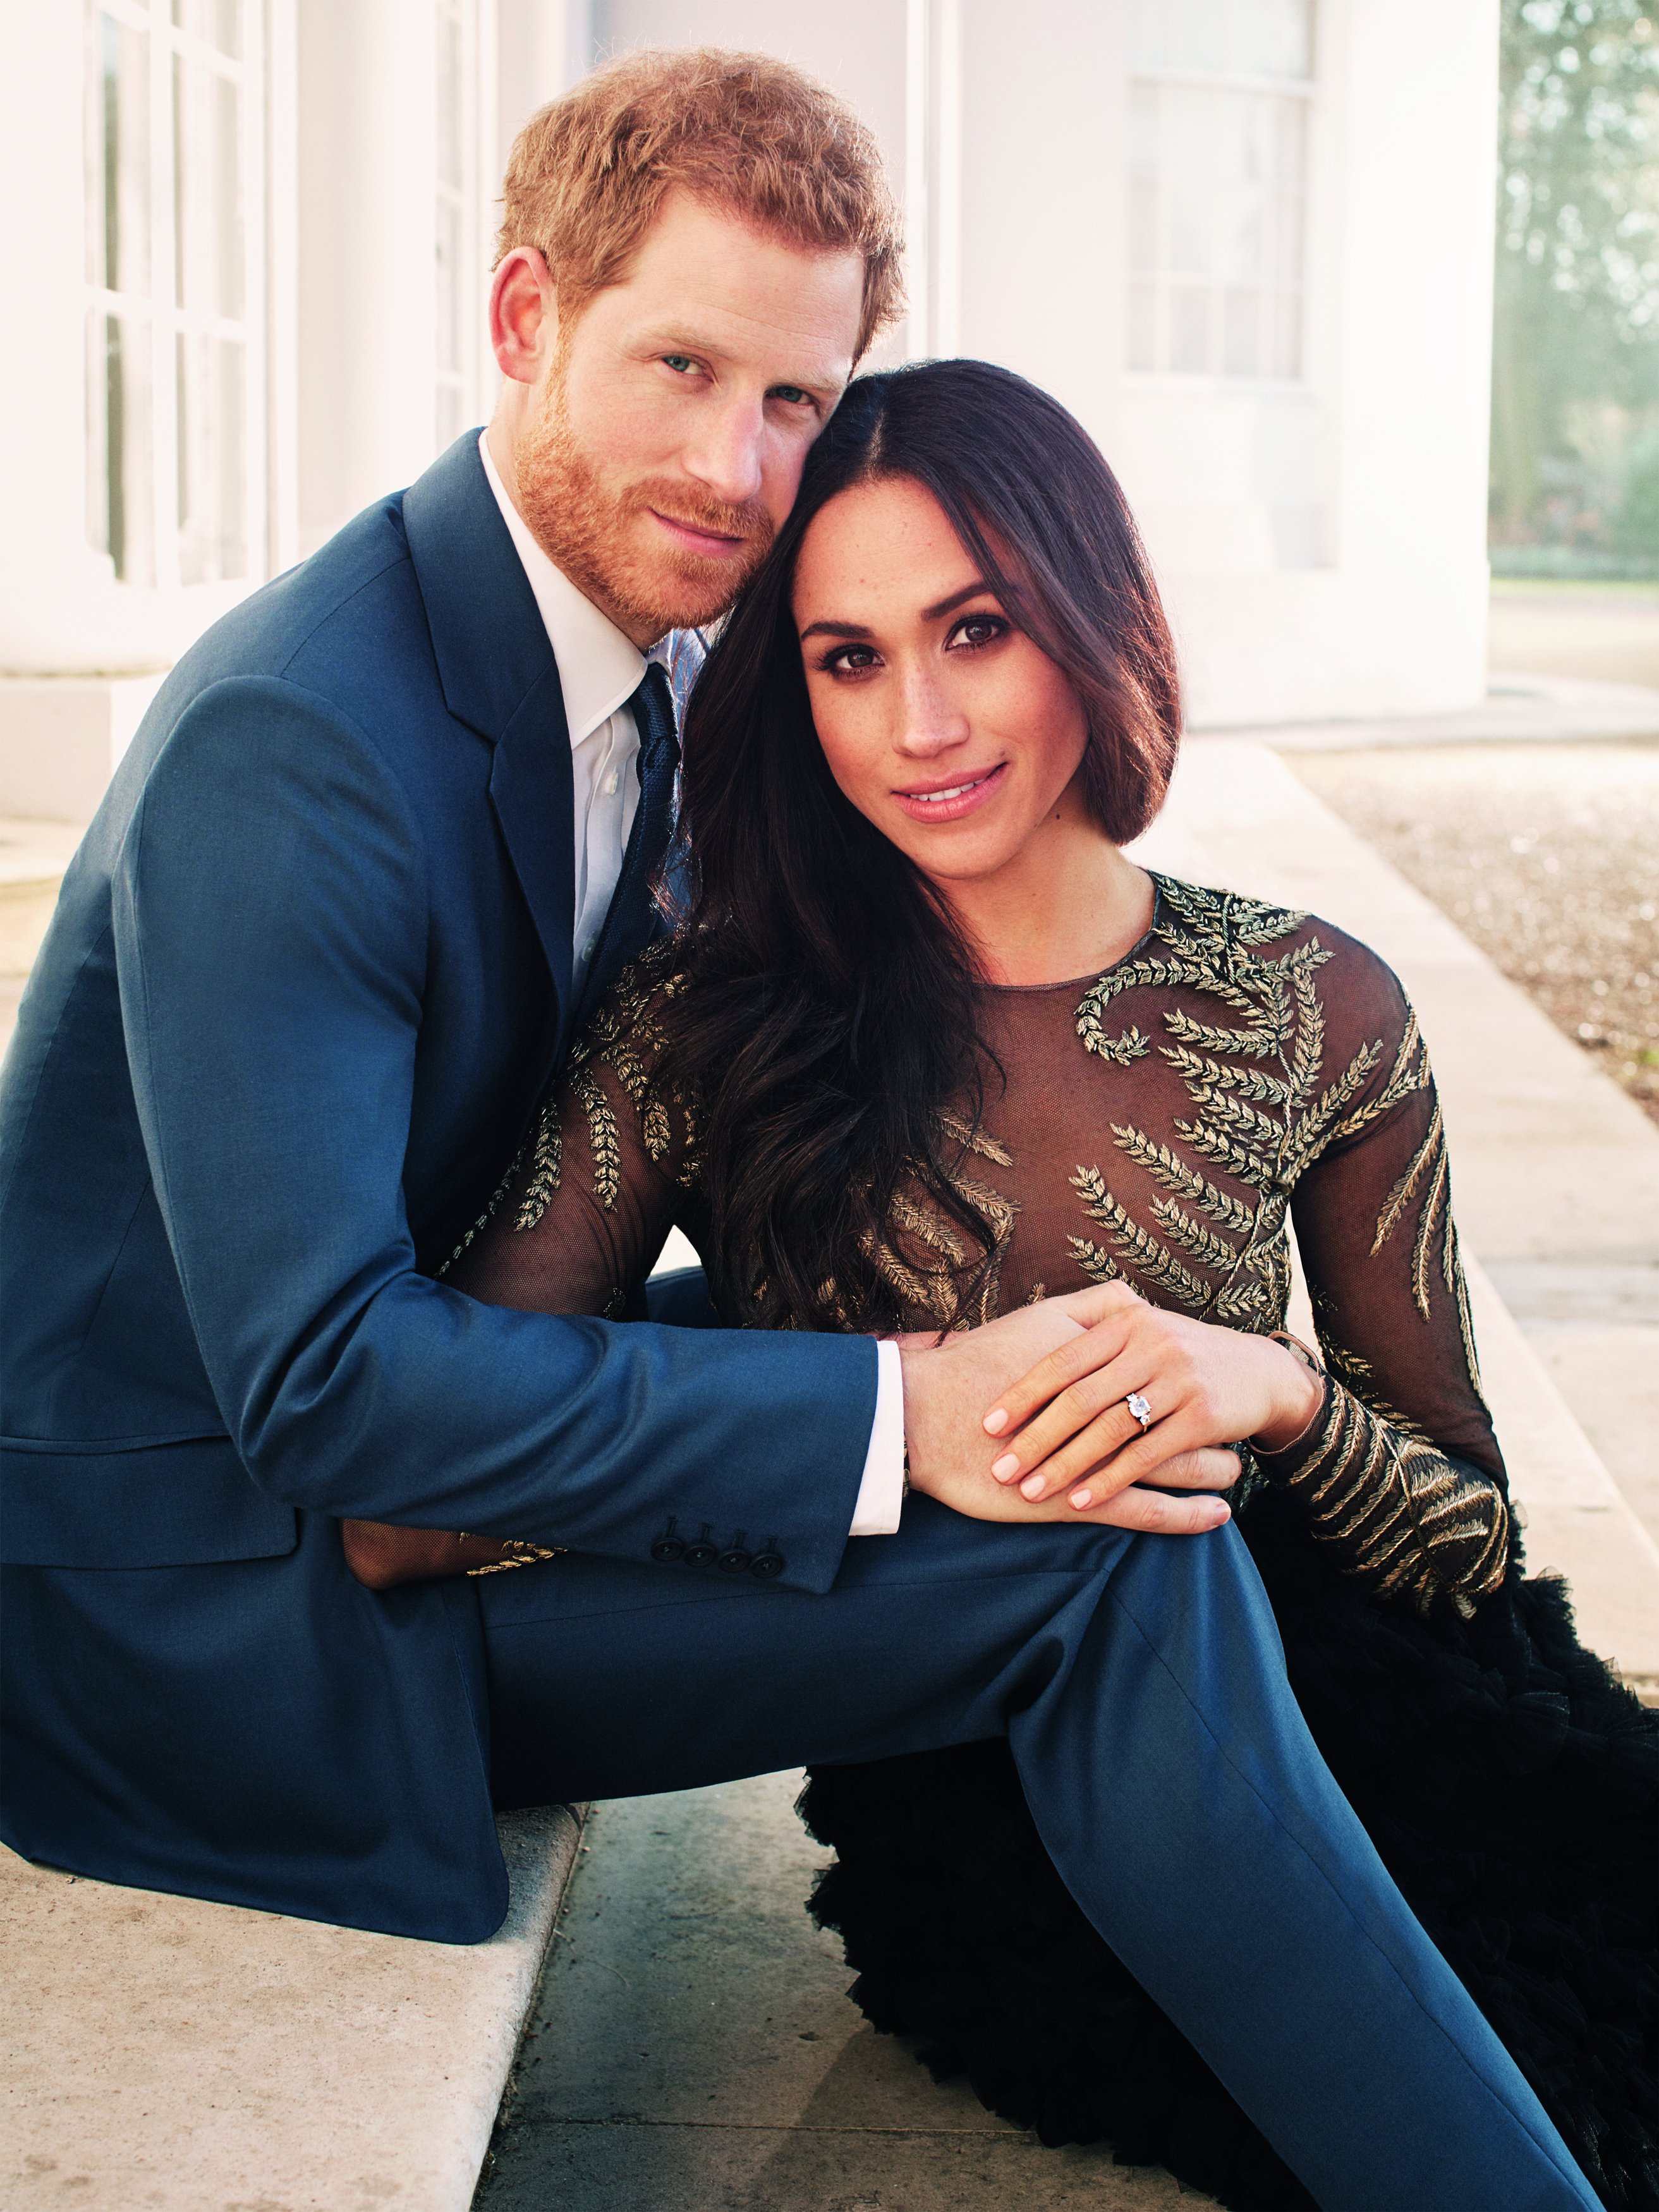 Foto von Prinz Harry und Meghan Markle nach der Bekanntgabe ihrer Verlobung | Quelle: Getty Images